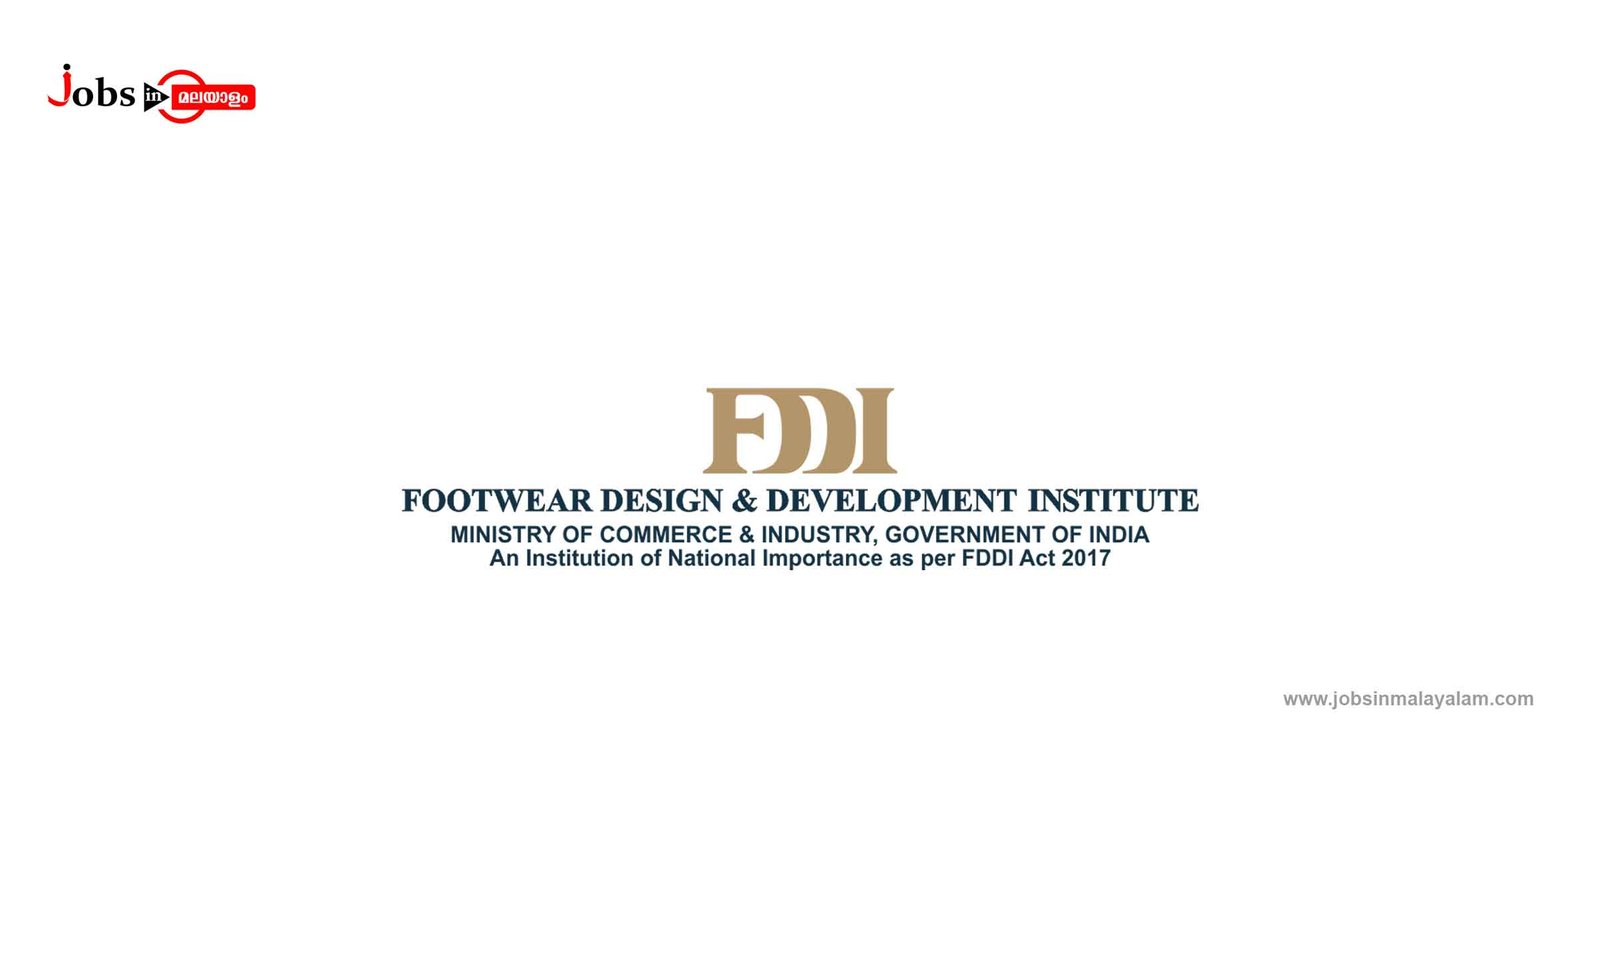 Footwear Design And Development Institute (FDDI)